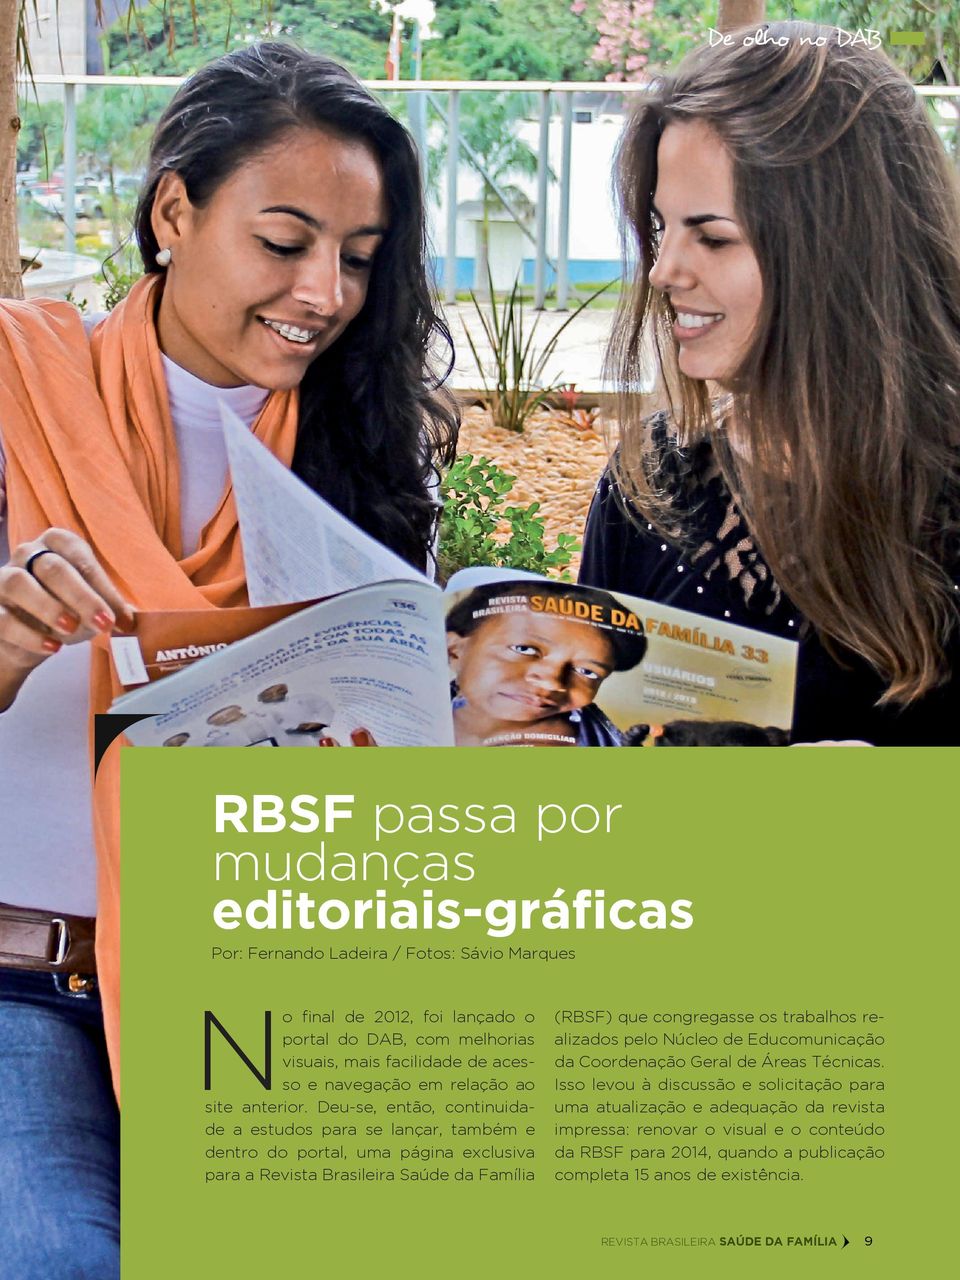 Deu-se, então, continuidade a estudos para se lançar, também e dentro do portal, uma página exclusiva para a Revista Brasileira Saúde da Família (RBSF) que congregasse os trabalhos